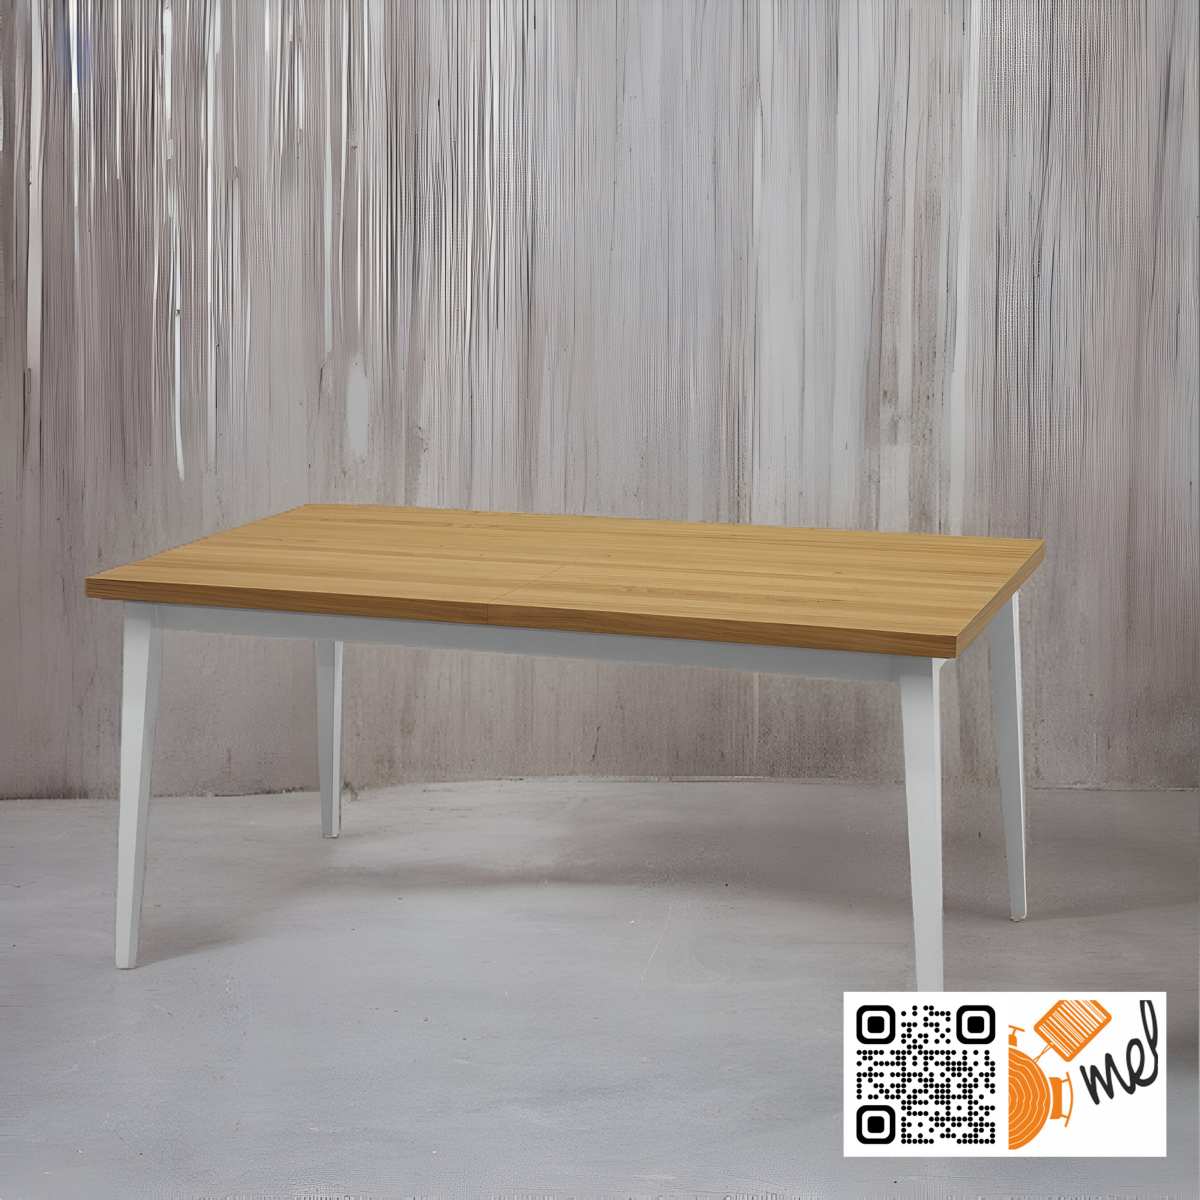 Stół drewniany z rozkładanym blatem dębowym i białymi nogami